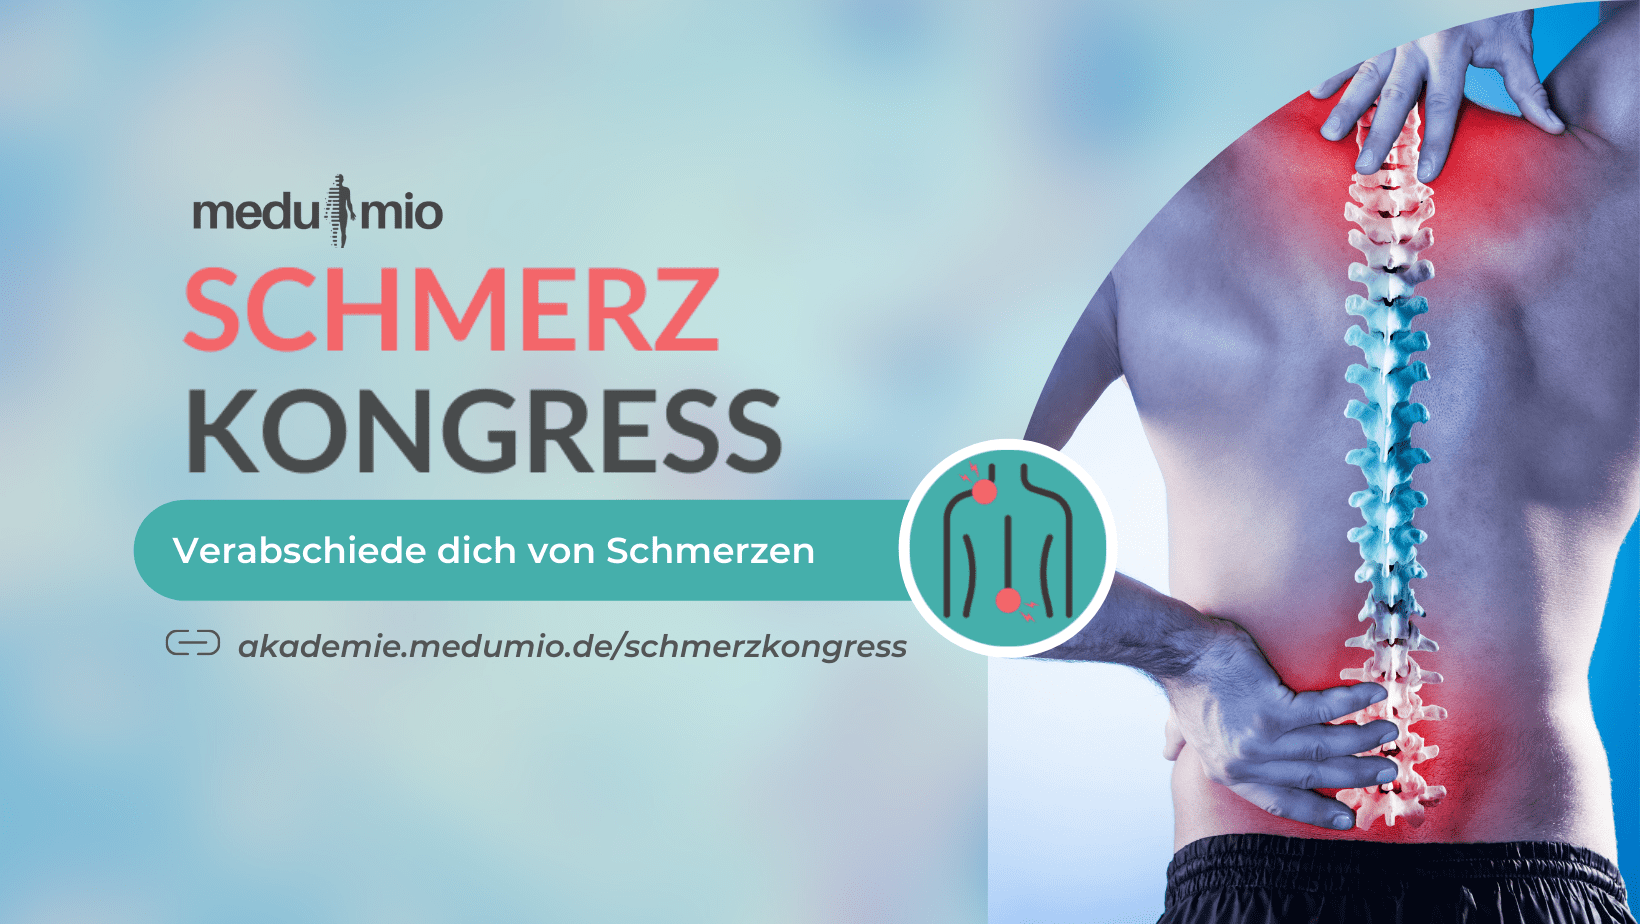 Schmerzkongress 2022 by Medumio